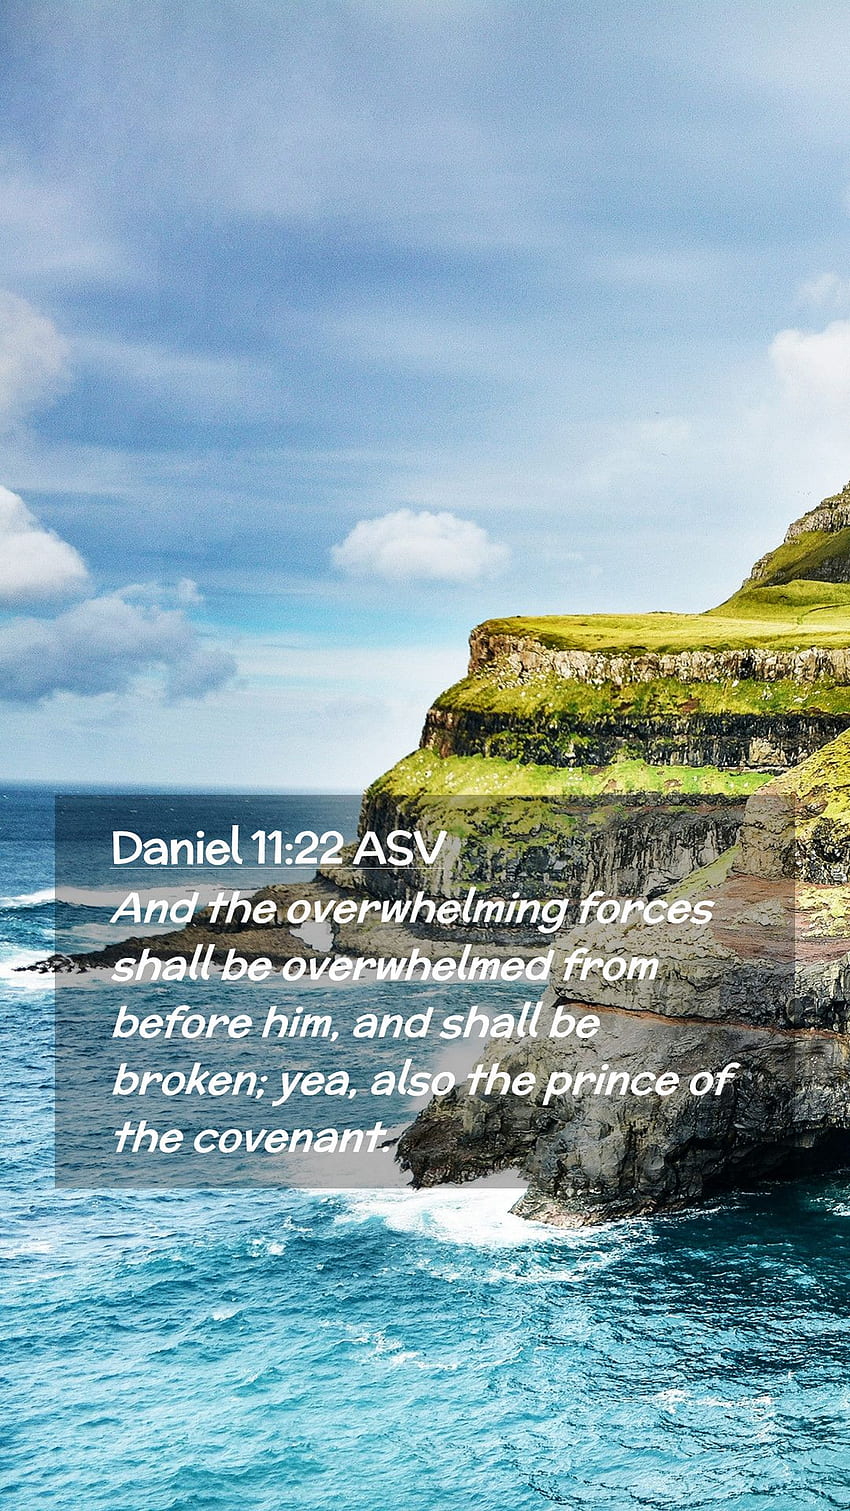 Daniel 11:22 ASV Mobile Phone - Dan kekuatan yang luar biasa akan diliputi wallpaper ponsel HD